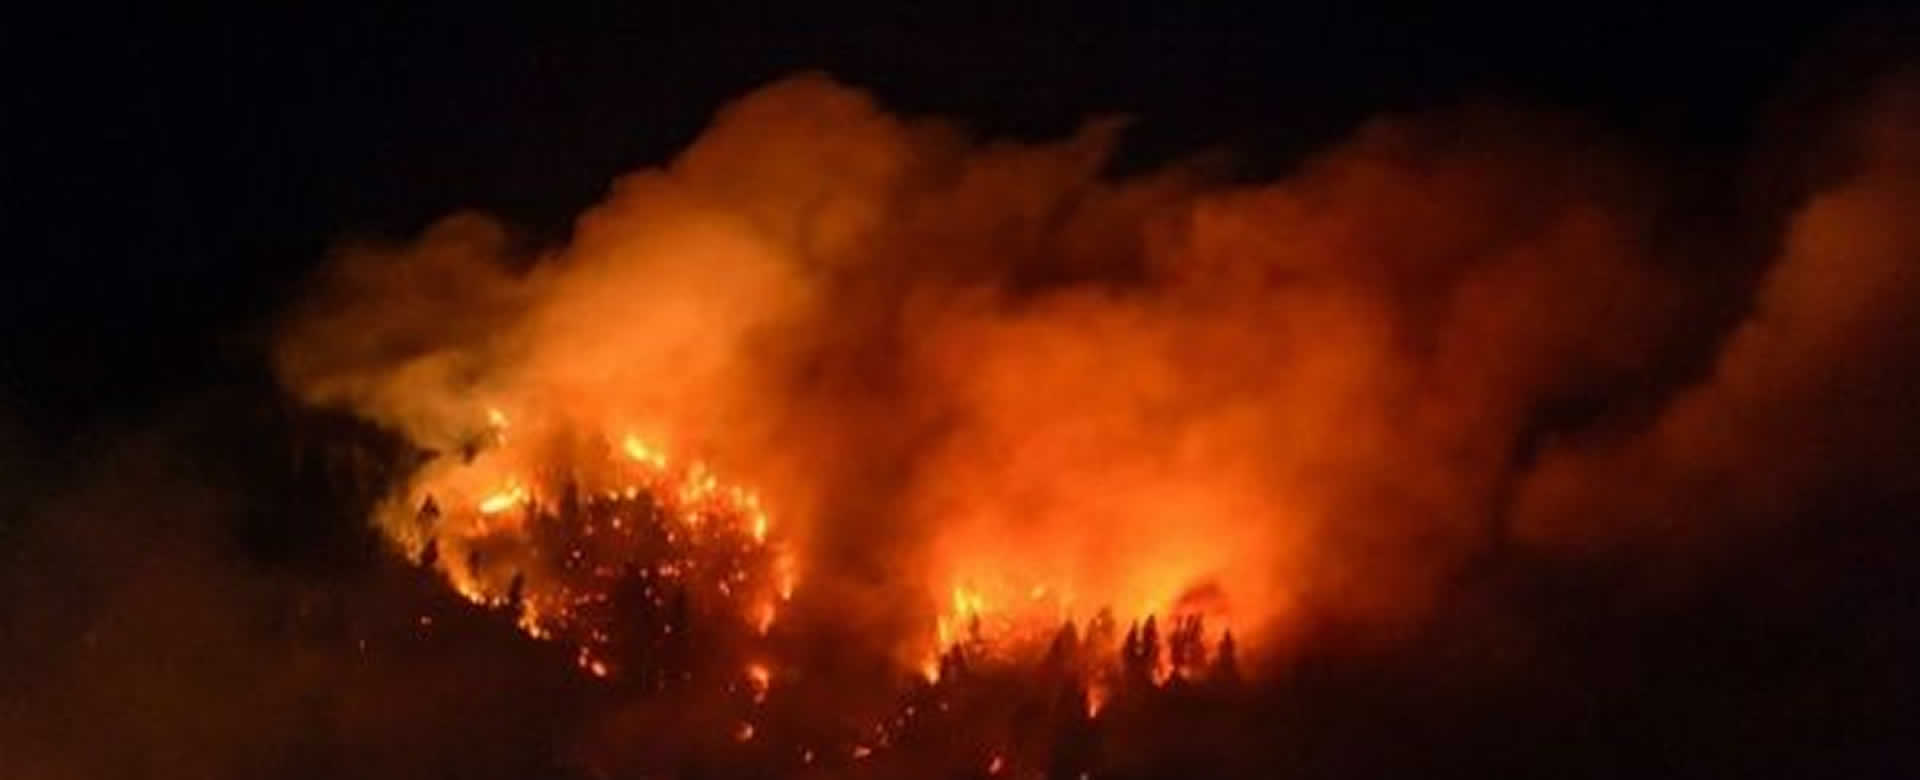 Declaran alerta Roja por incendios forestales en la Araucanía en Chile